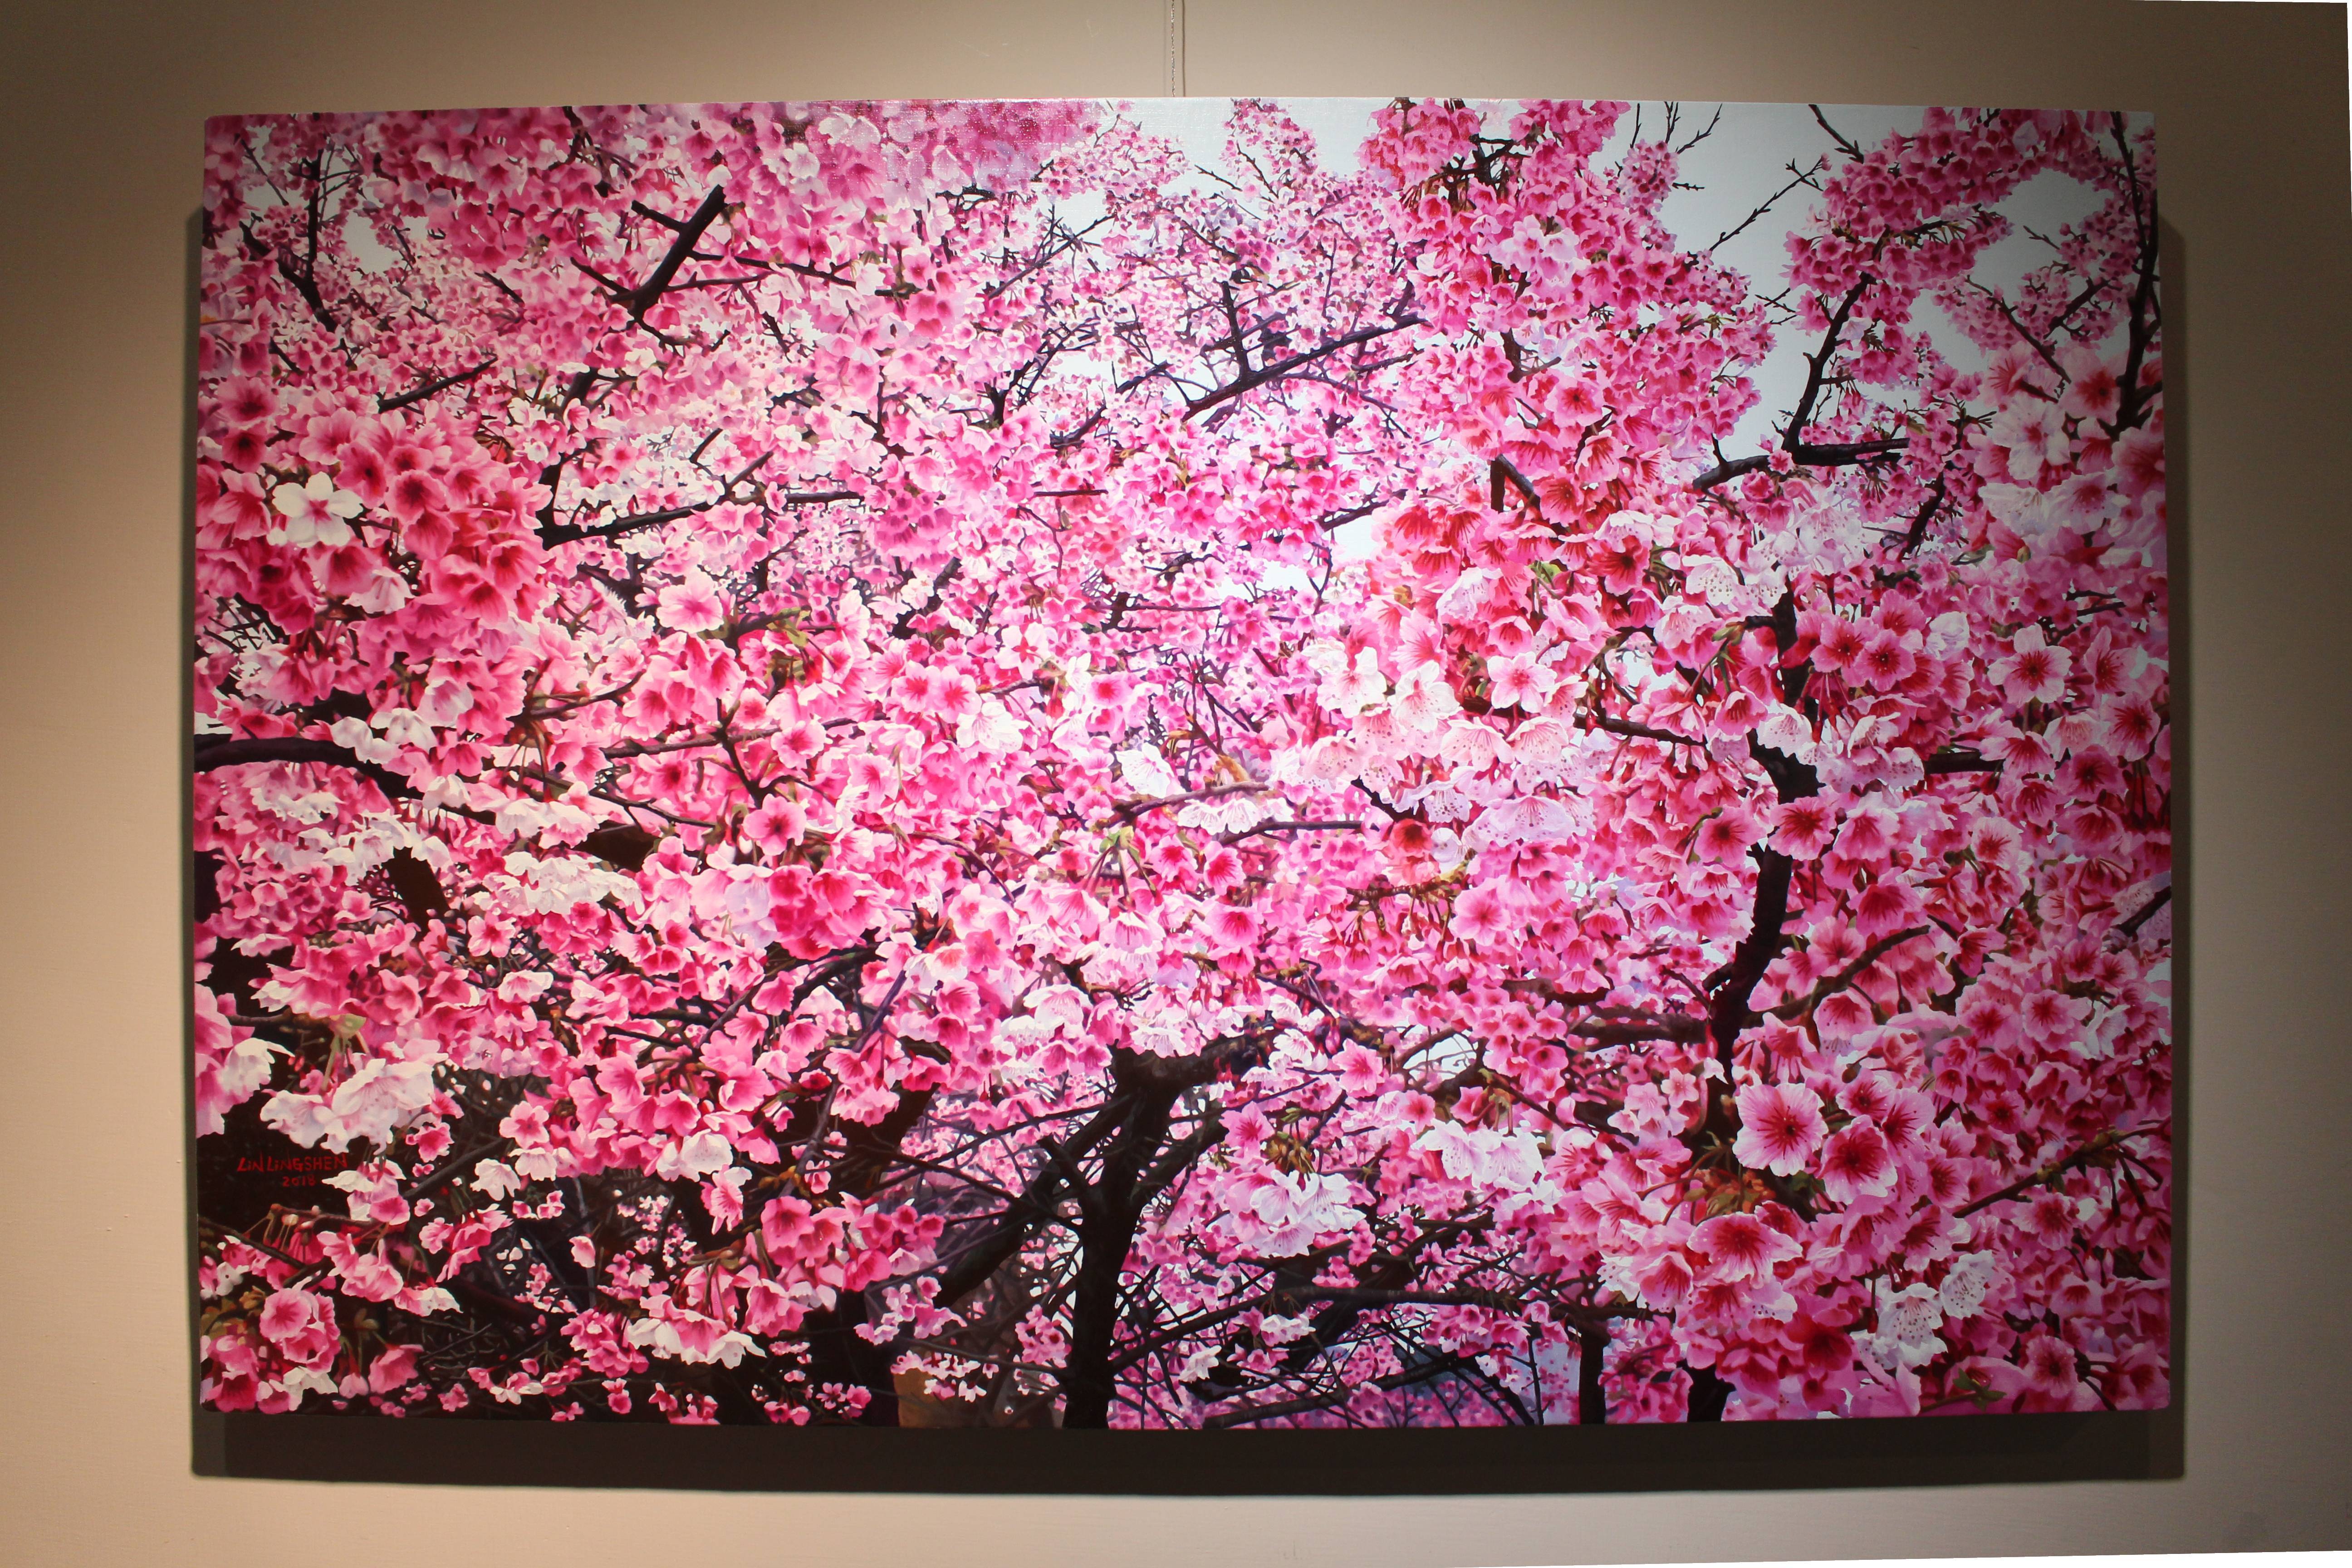 林嶺森，《三色櫻》，2018，60.5×91cm (30M)，油彩/畫布。 